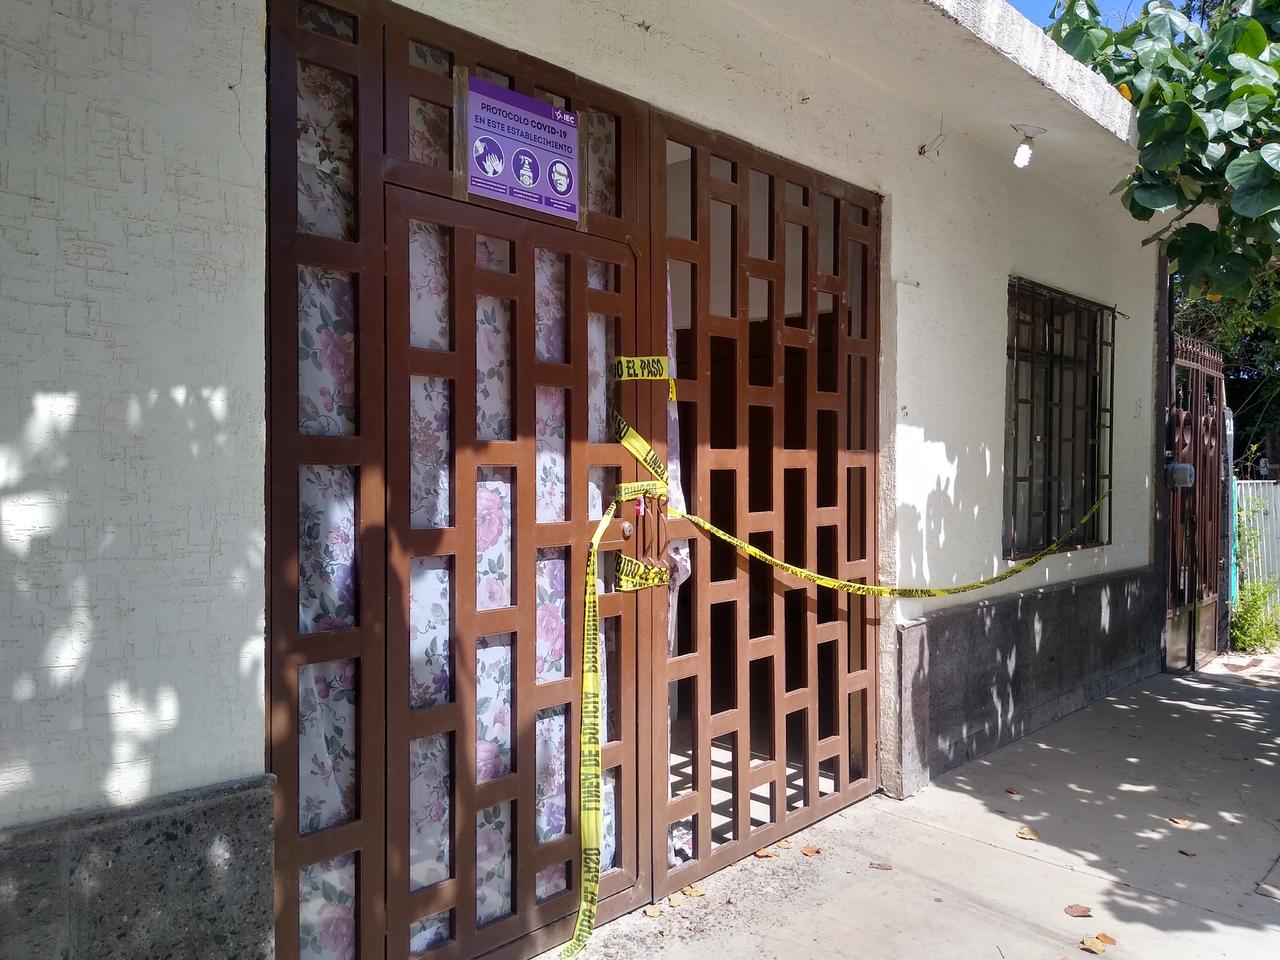 Centros de rehabilitación en Madero funcionan irregularmente